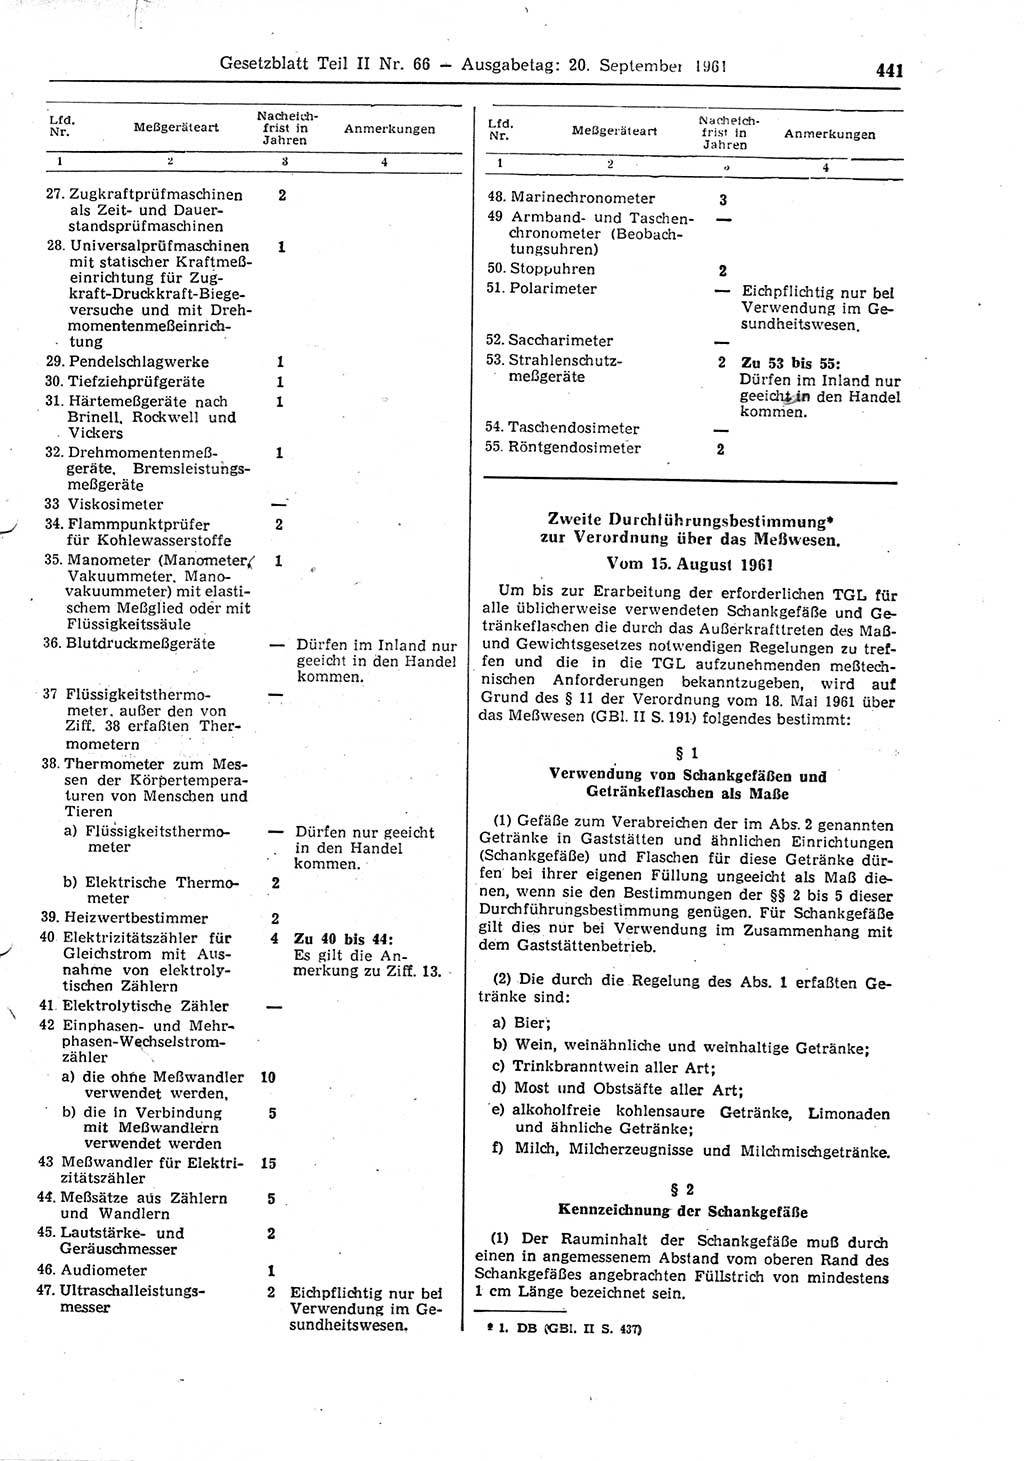 Gesetzblatt (GBl.) der Deutschen Demokratischen Republik (DDR) Teil ⅠⅠ 1961, Seite 441 (GBl. DDR ⅠⅠ 1961, S. 441)